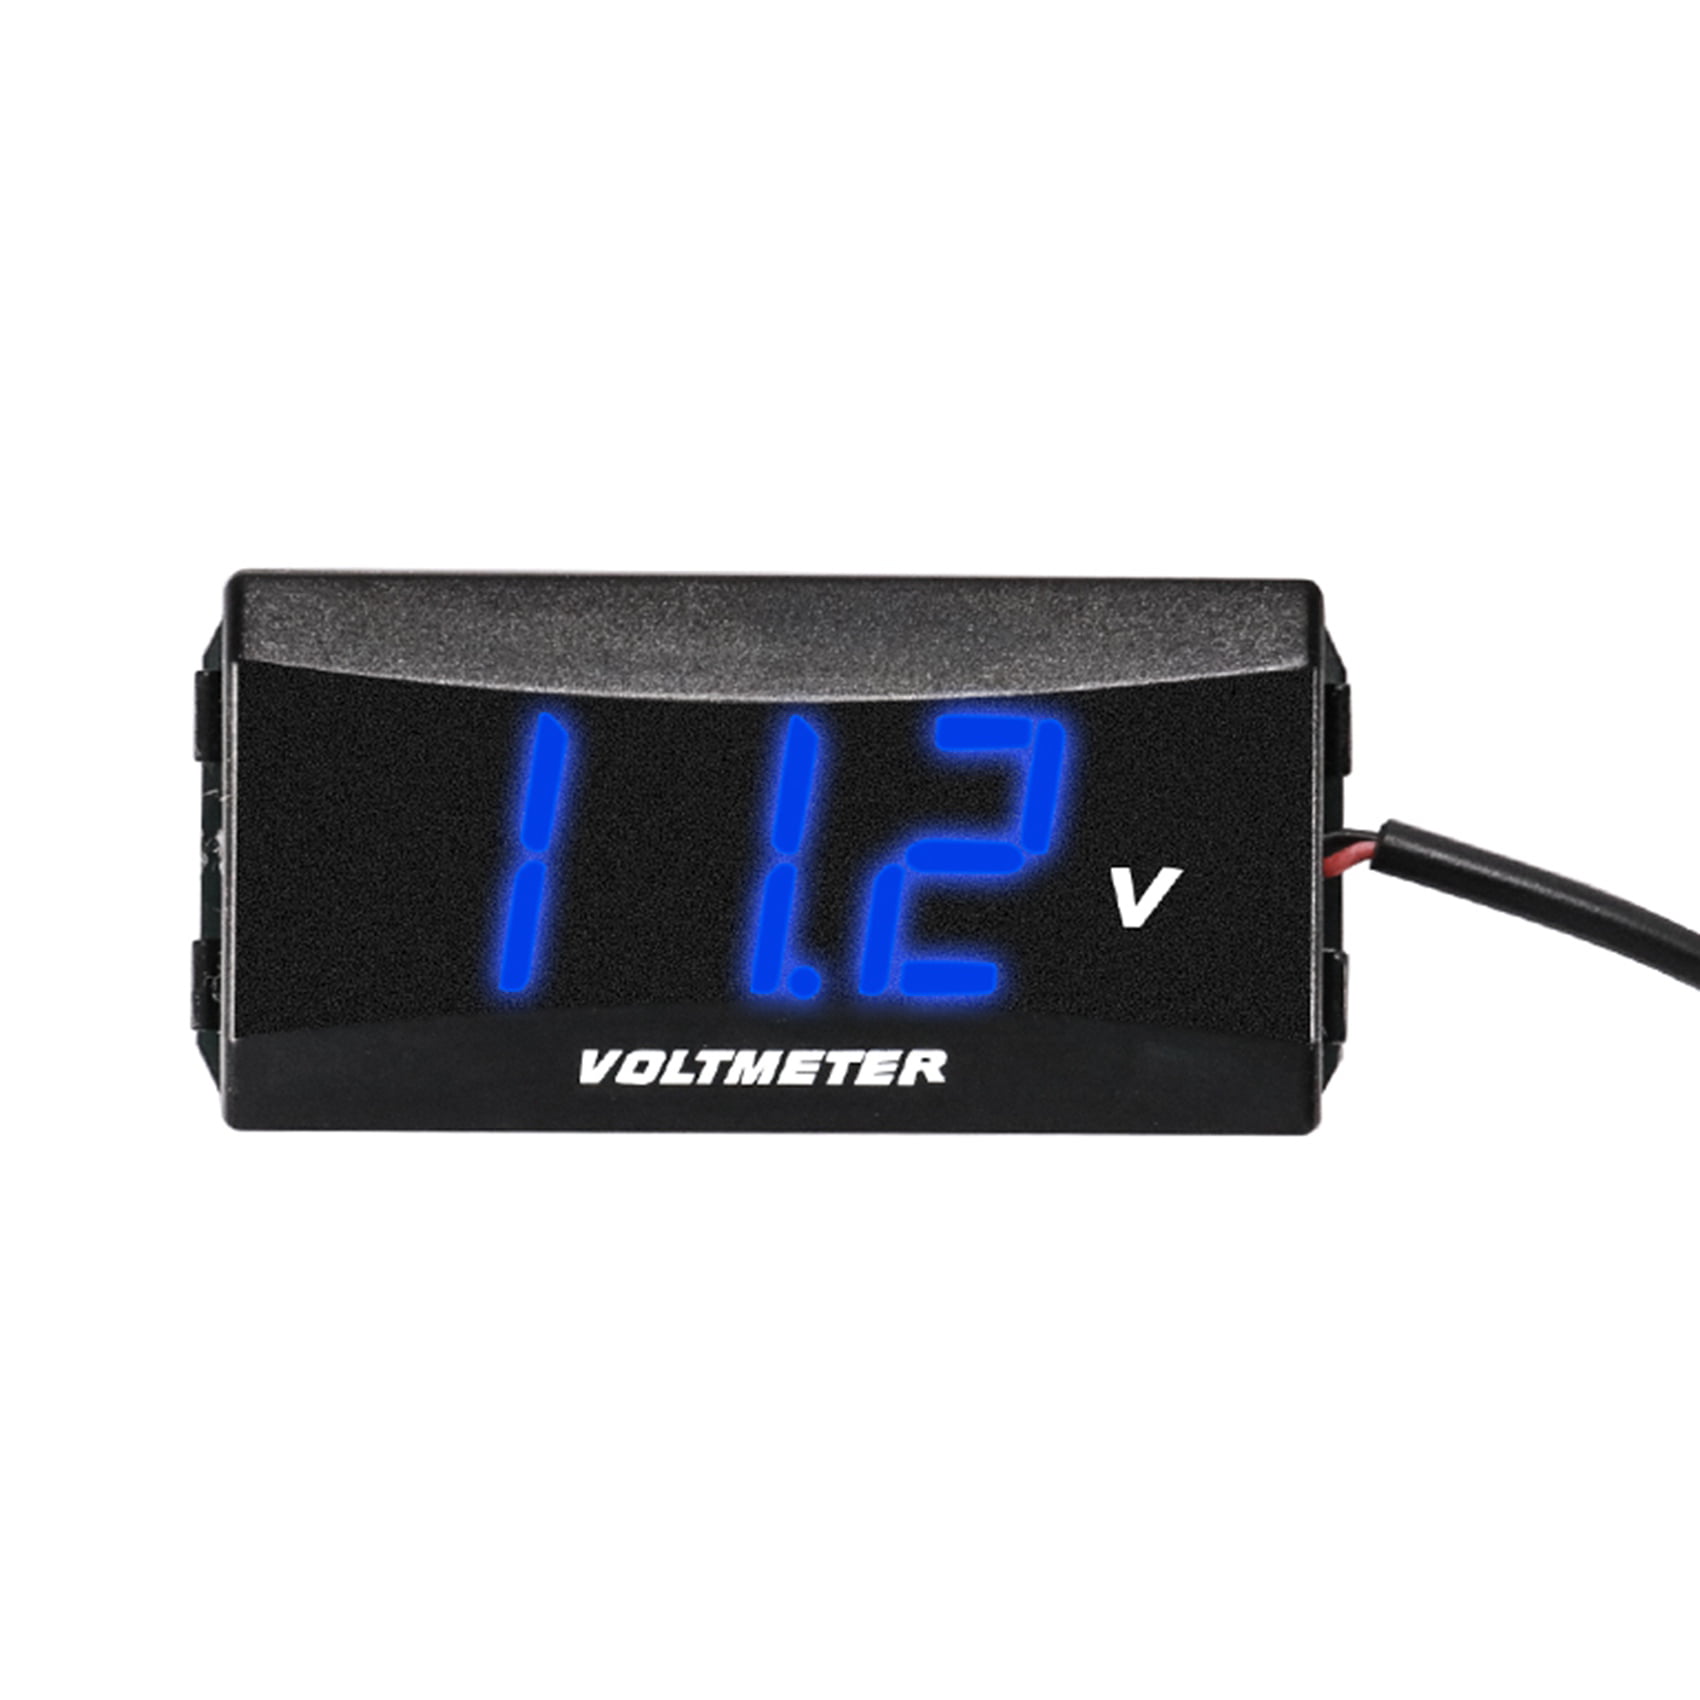 6-80V LED Dual Display Voltmeter Digital Voltage Power Meter for Car Motorcycle 